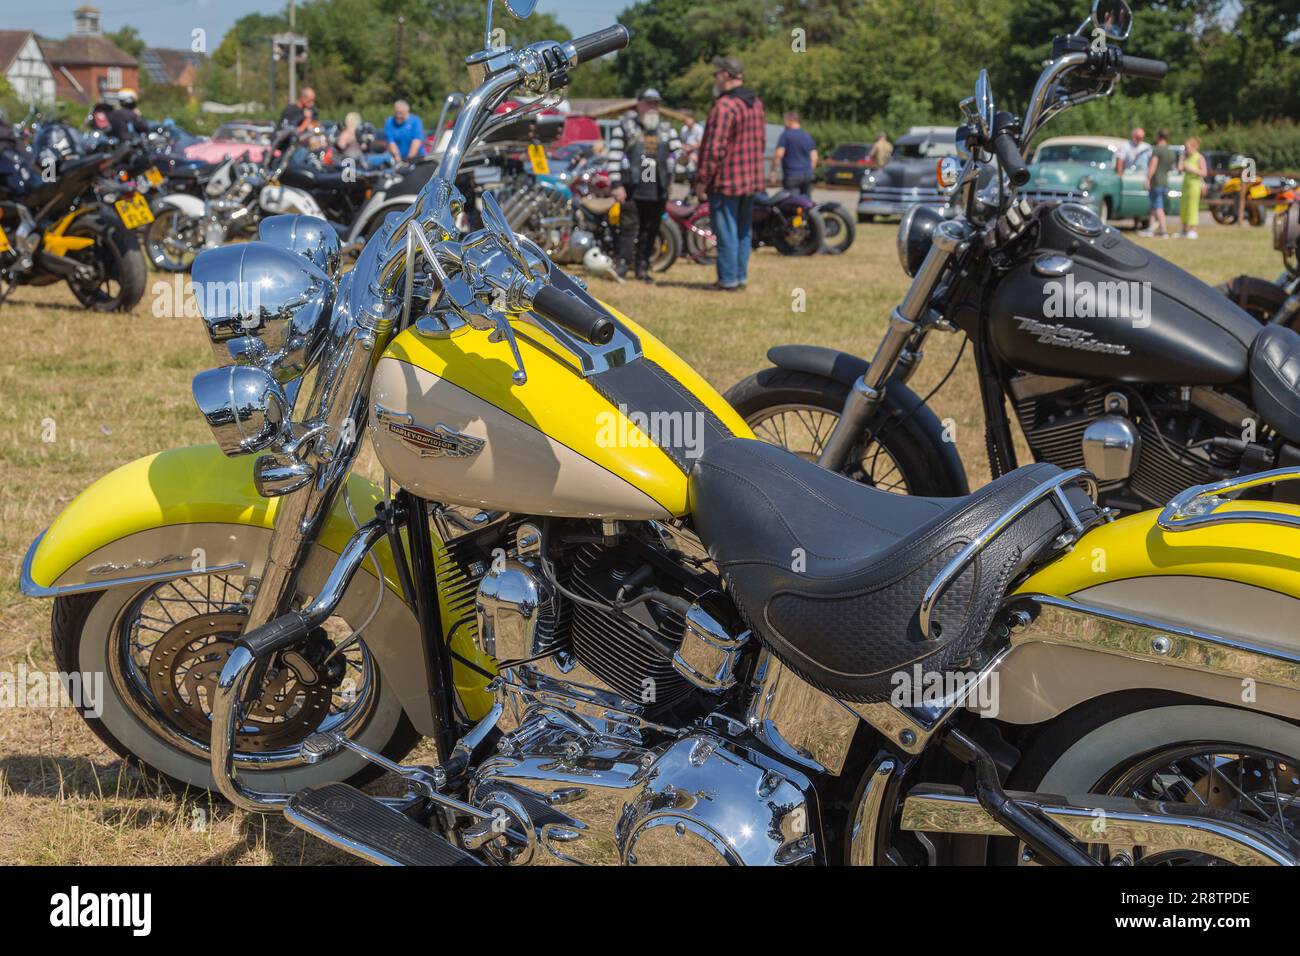 Der verchromte Motor einer geparkten Harley Davidson scheint bei einem Biker-Treffen in die Sonne. Freiheit, Roadtrip, Abenteuer, Lifestyle oder Reisekonzept. Stockfoto